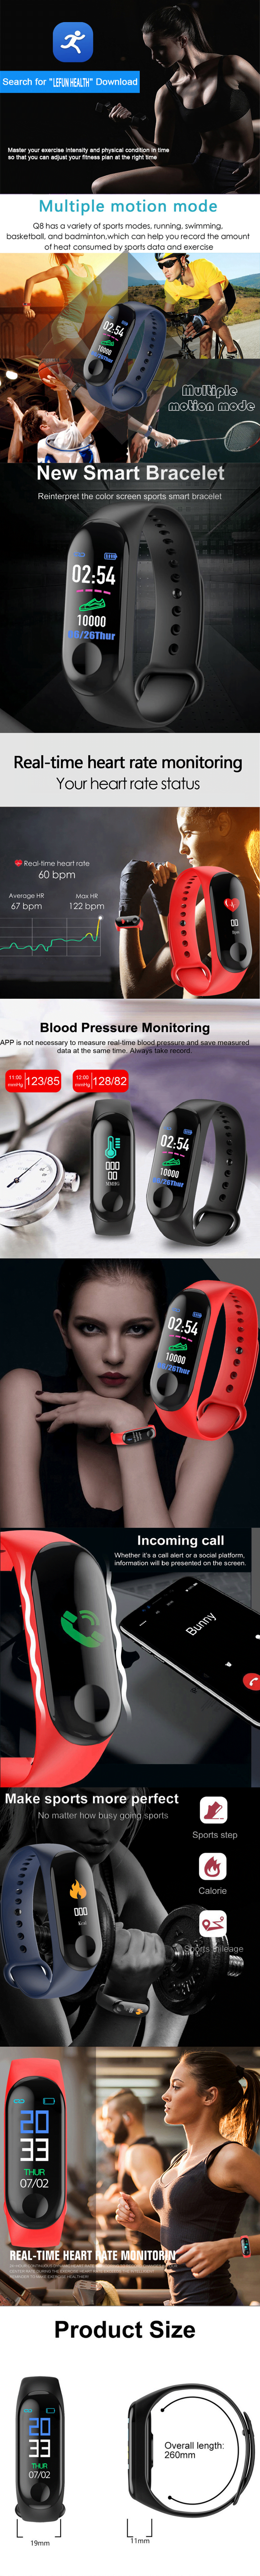 M3 смарт браслет Bluetooth Смарт часы фитнес трекер умный браслет купить в украине